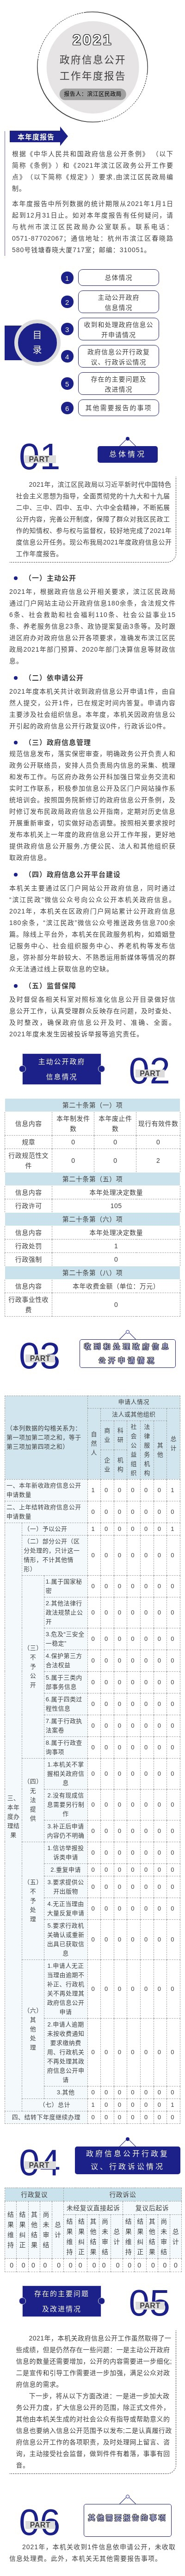 图解--滨江区民政局2021年政府信息公开工作年度报告.jpg